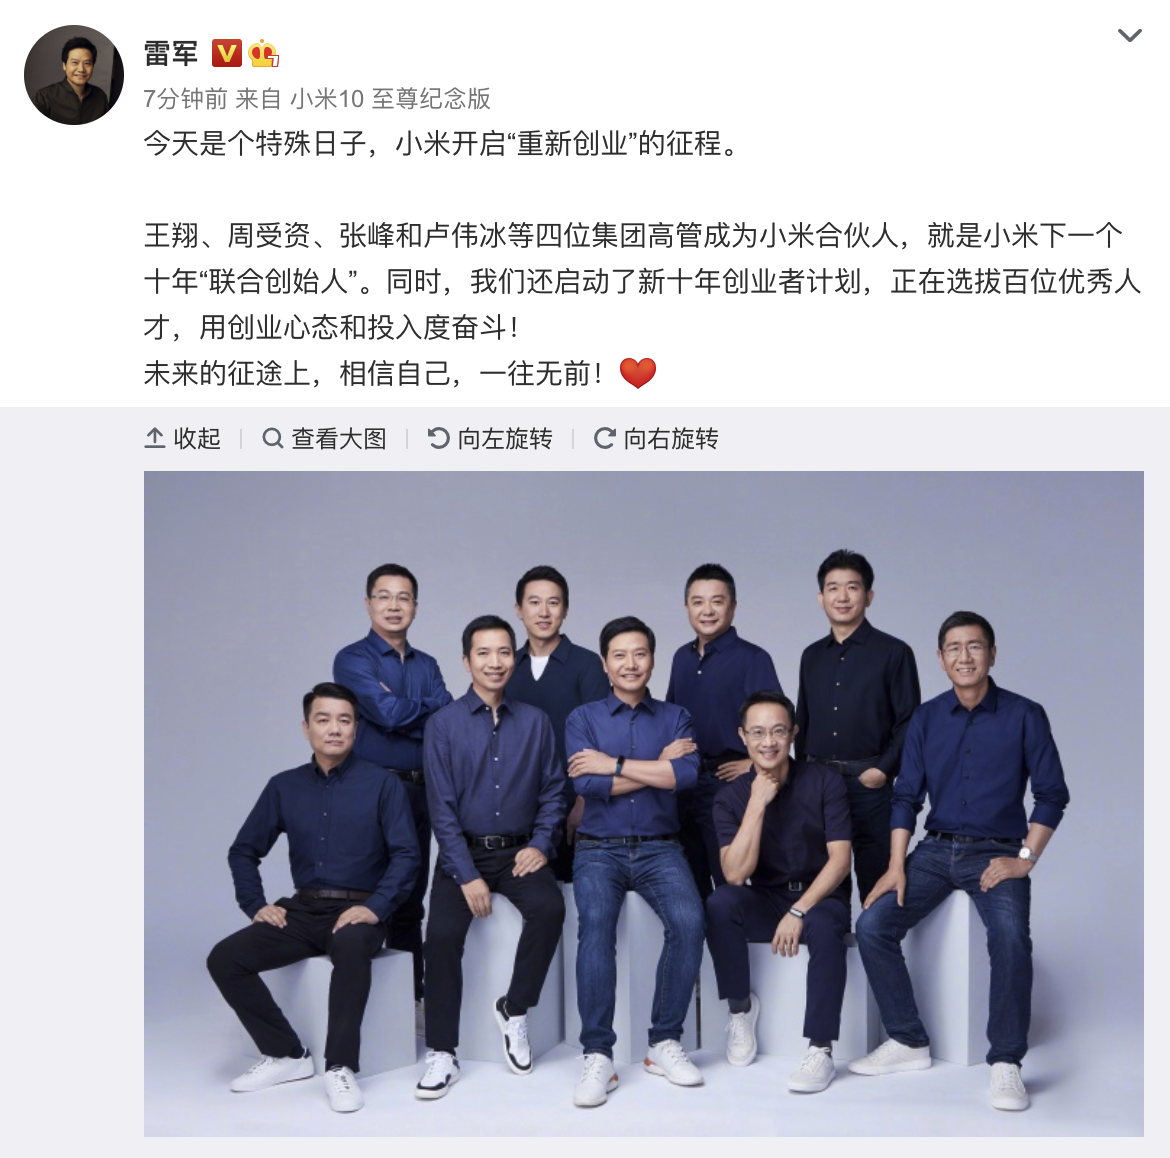 缠斗2019:红米与荣耀这对“冤家” _卢伟冰